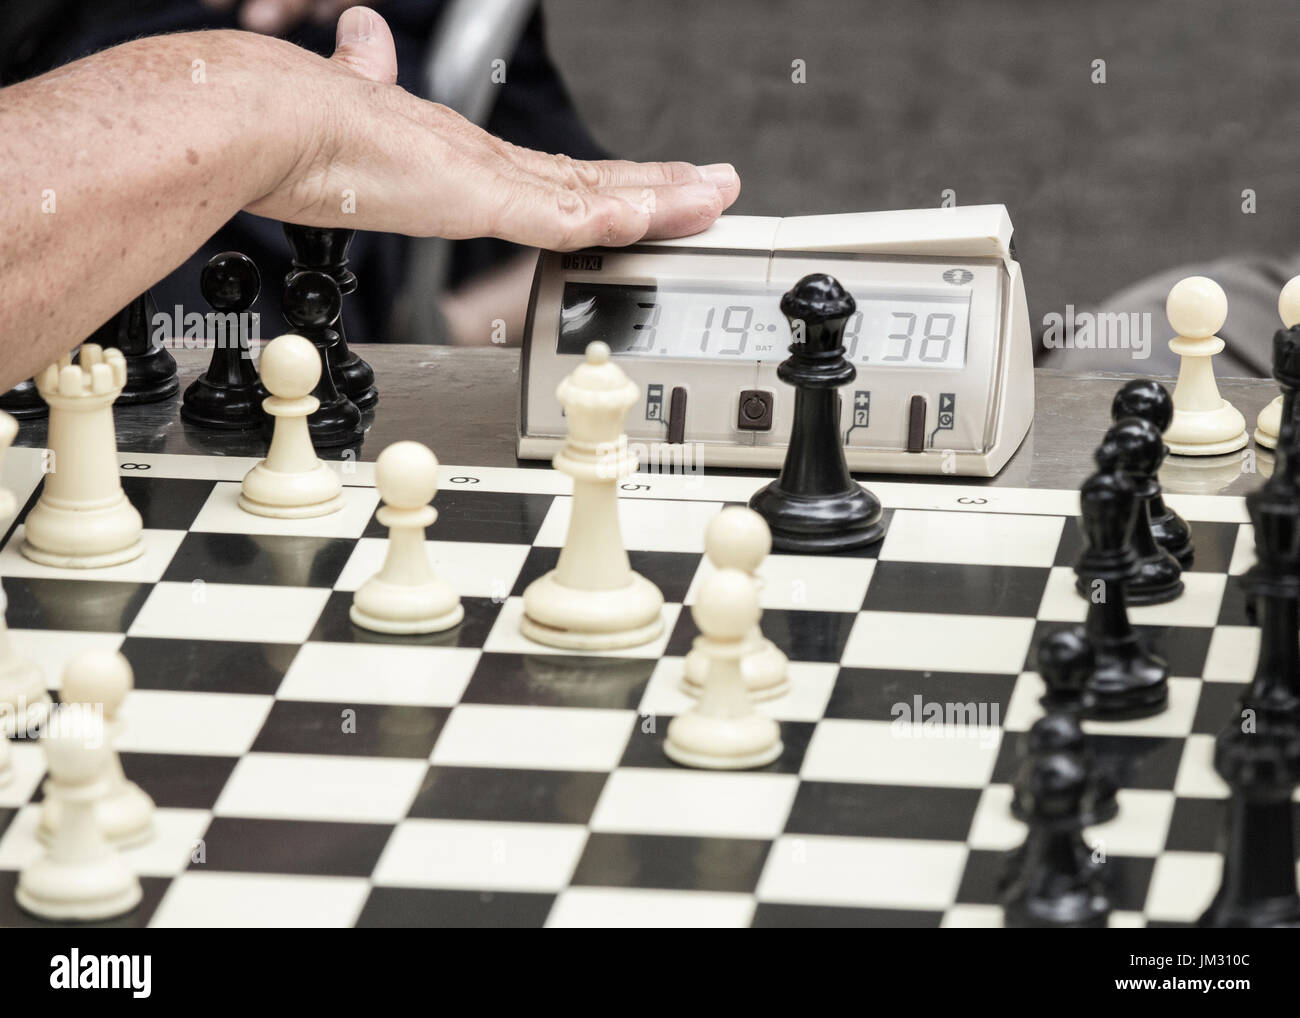 Schach zu beschleunigen: Männer spielen 5 Minuten Blitzschach in Spanien Stockfoto